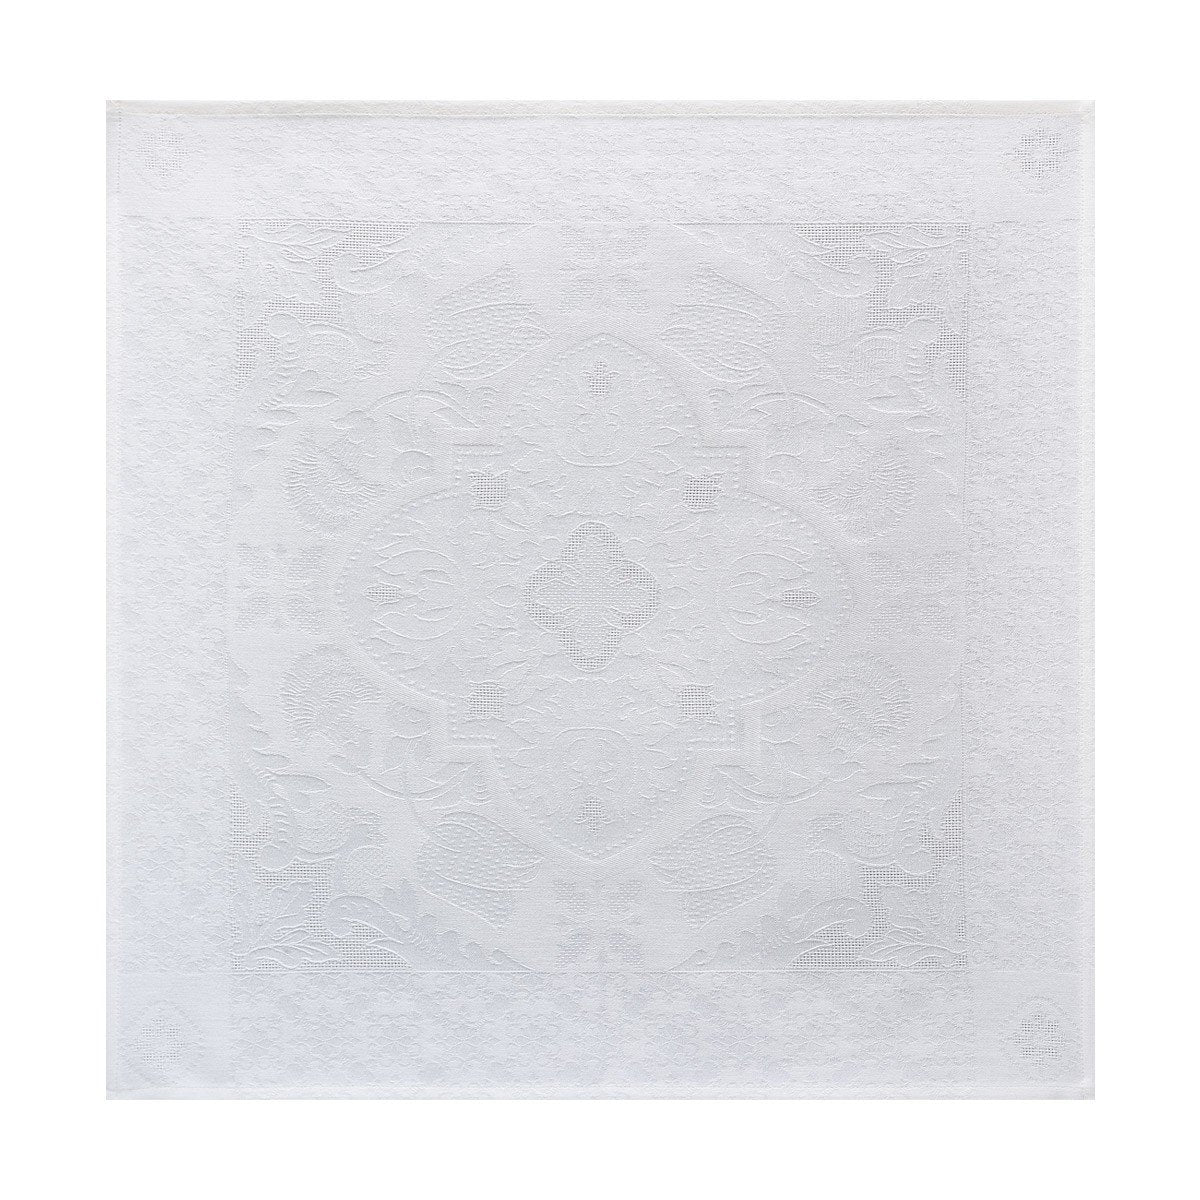 Azulejos White Table Linens by Le Jacquard Français - Napkin Serviette